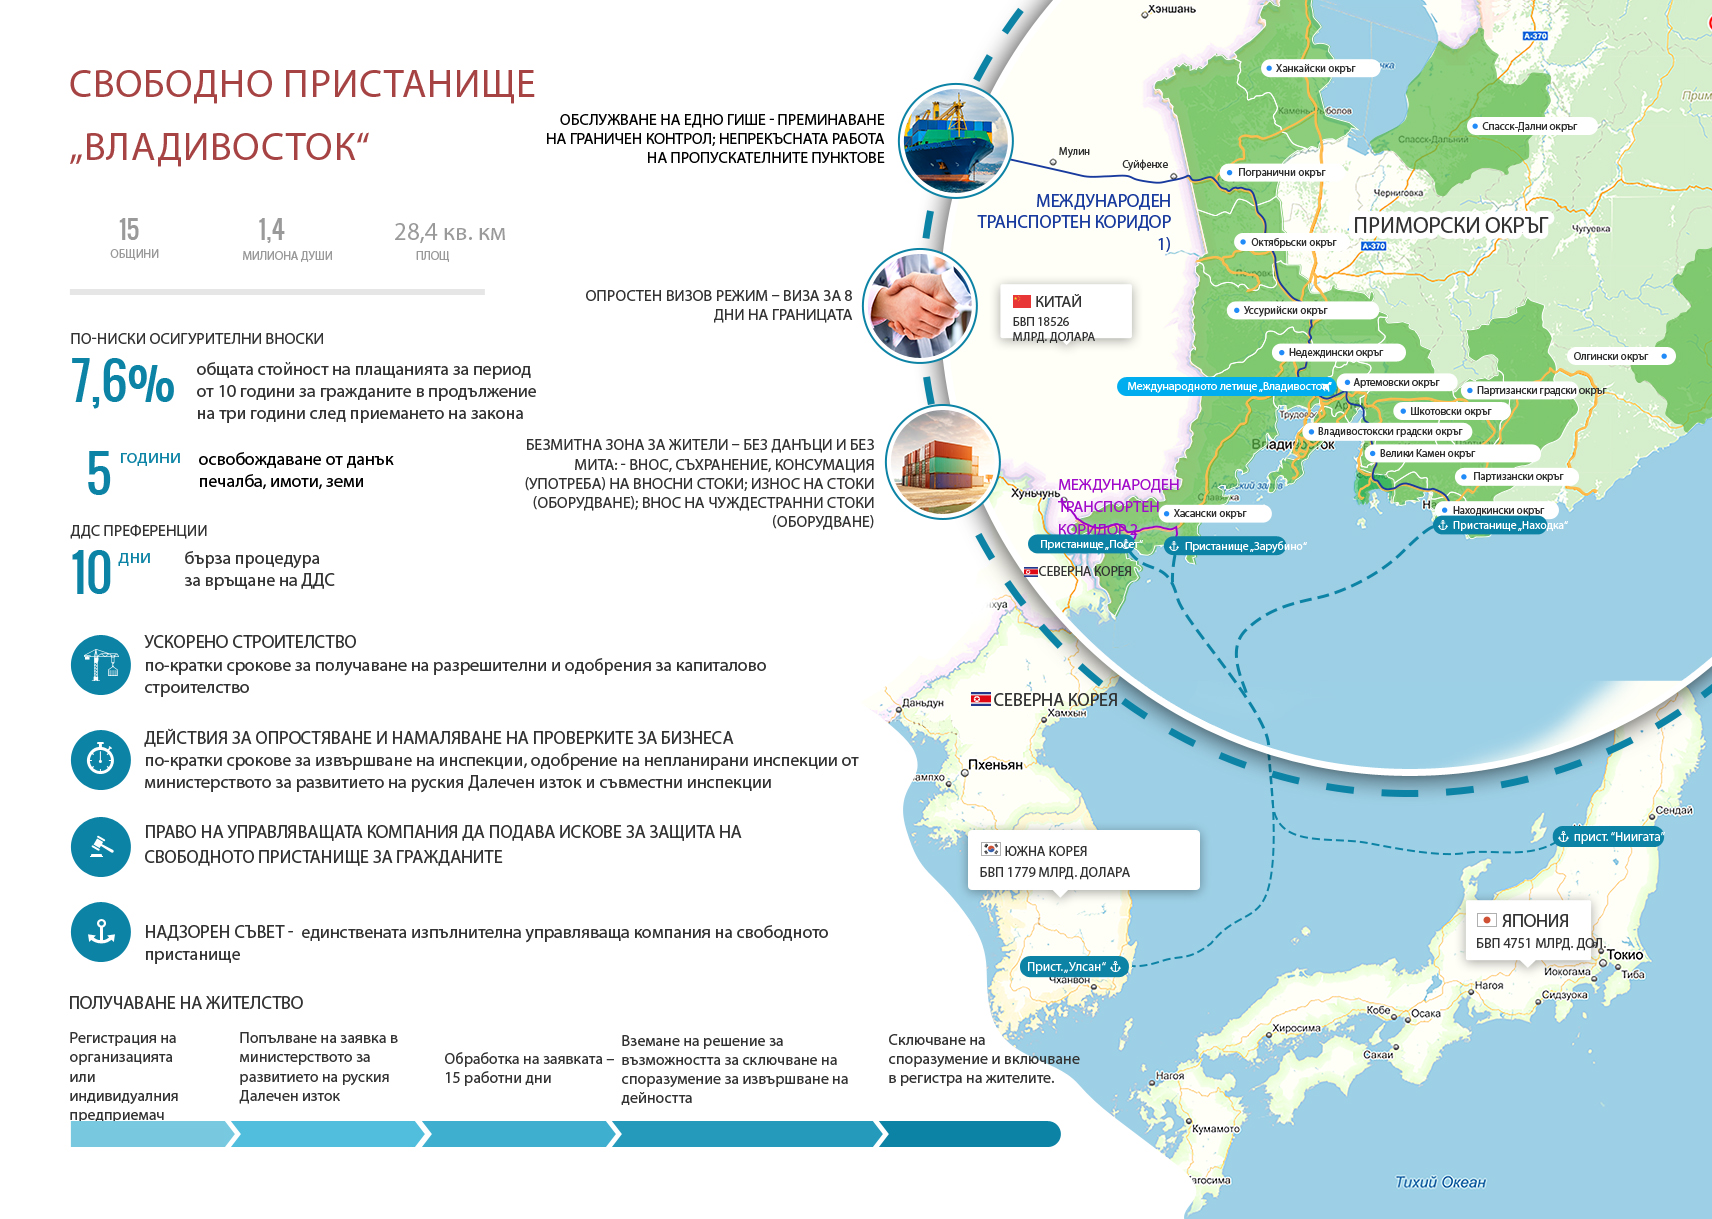 Руският президент Владимир Путин подписа закон за създаването на Свободното присатнище „Владивосток“ на 13 юли 2015 година. Законът ще влезе в сила 90 дни след датата на подписването. Градът ще има статут на свободно пристанище в продължение на 70 години. Според режима при пристигането си посетителите в града ще имат право да получат виза за 8 дни. Ще има и безмитна зона, както и данъчни стимули за фирмите, работещи в зоната.